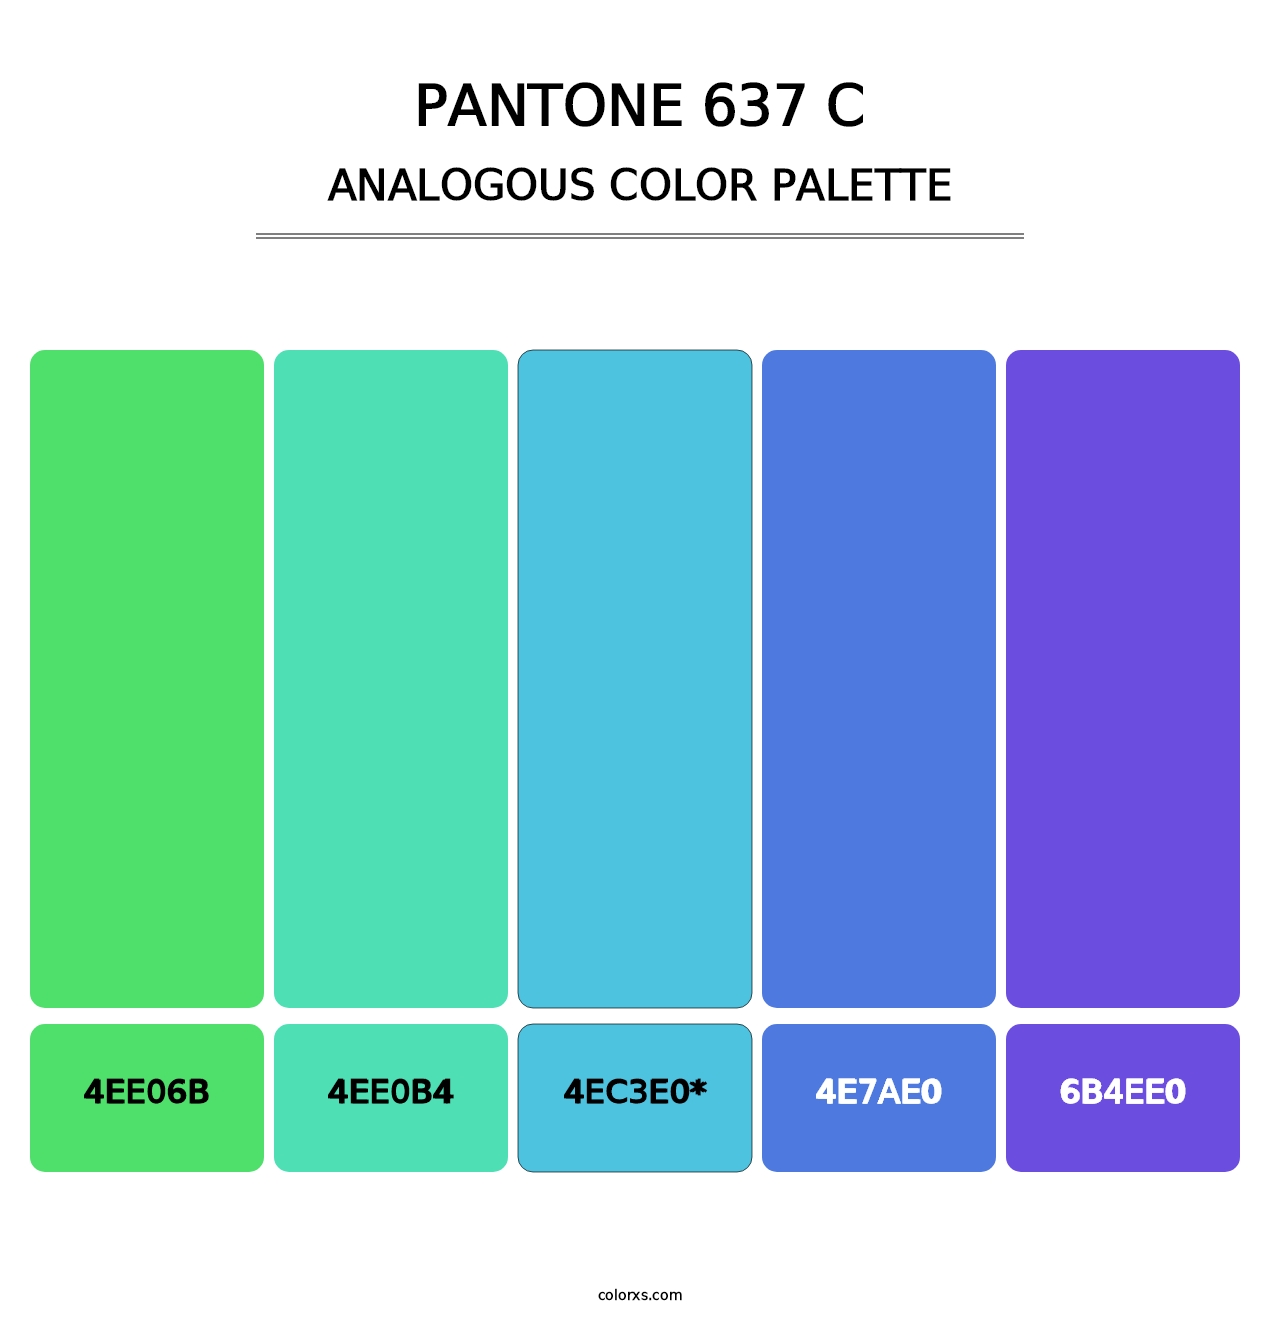 PANTONE 637 C - Analogous Color Palette